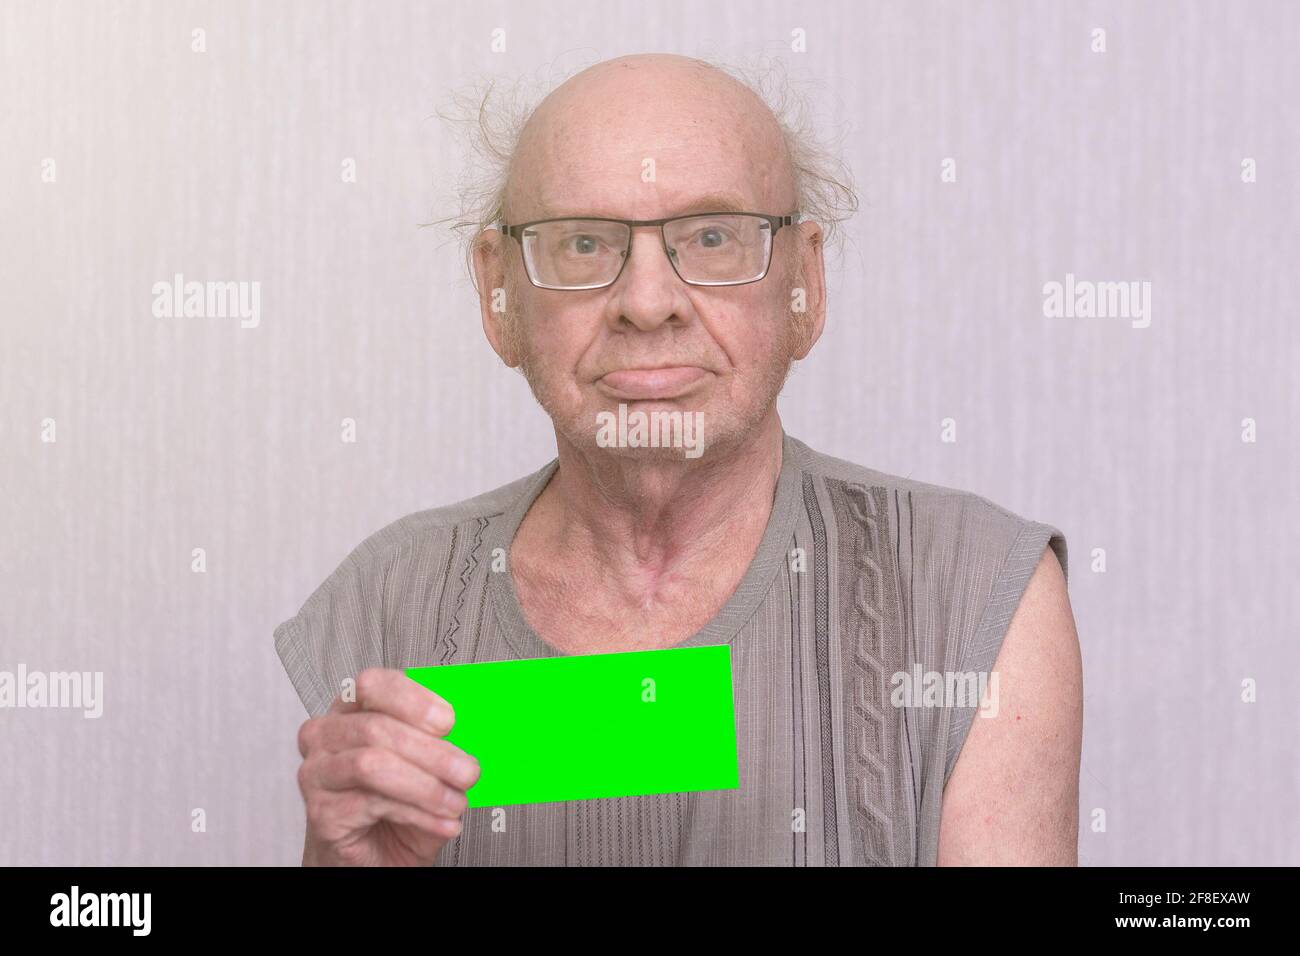 Vieux bald retraité avec lunettes en chemise grise est vide dans sa main. Banque D'Images